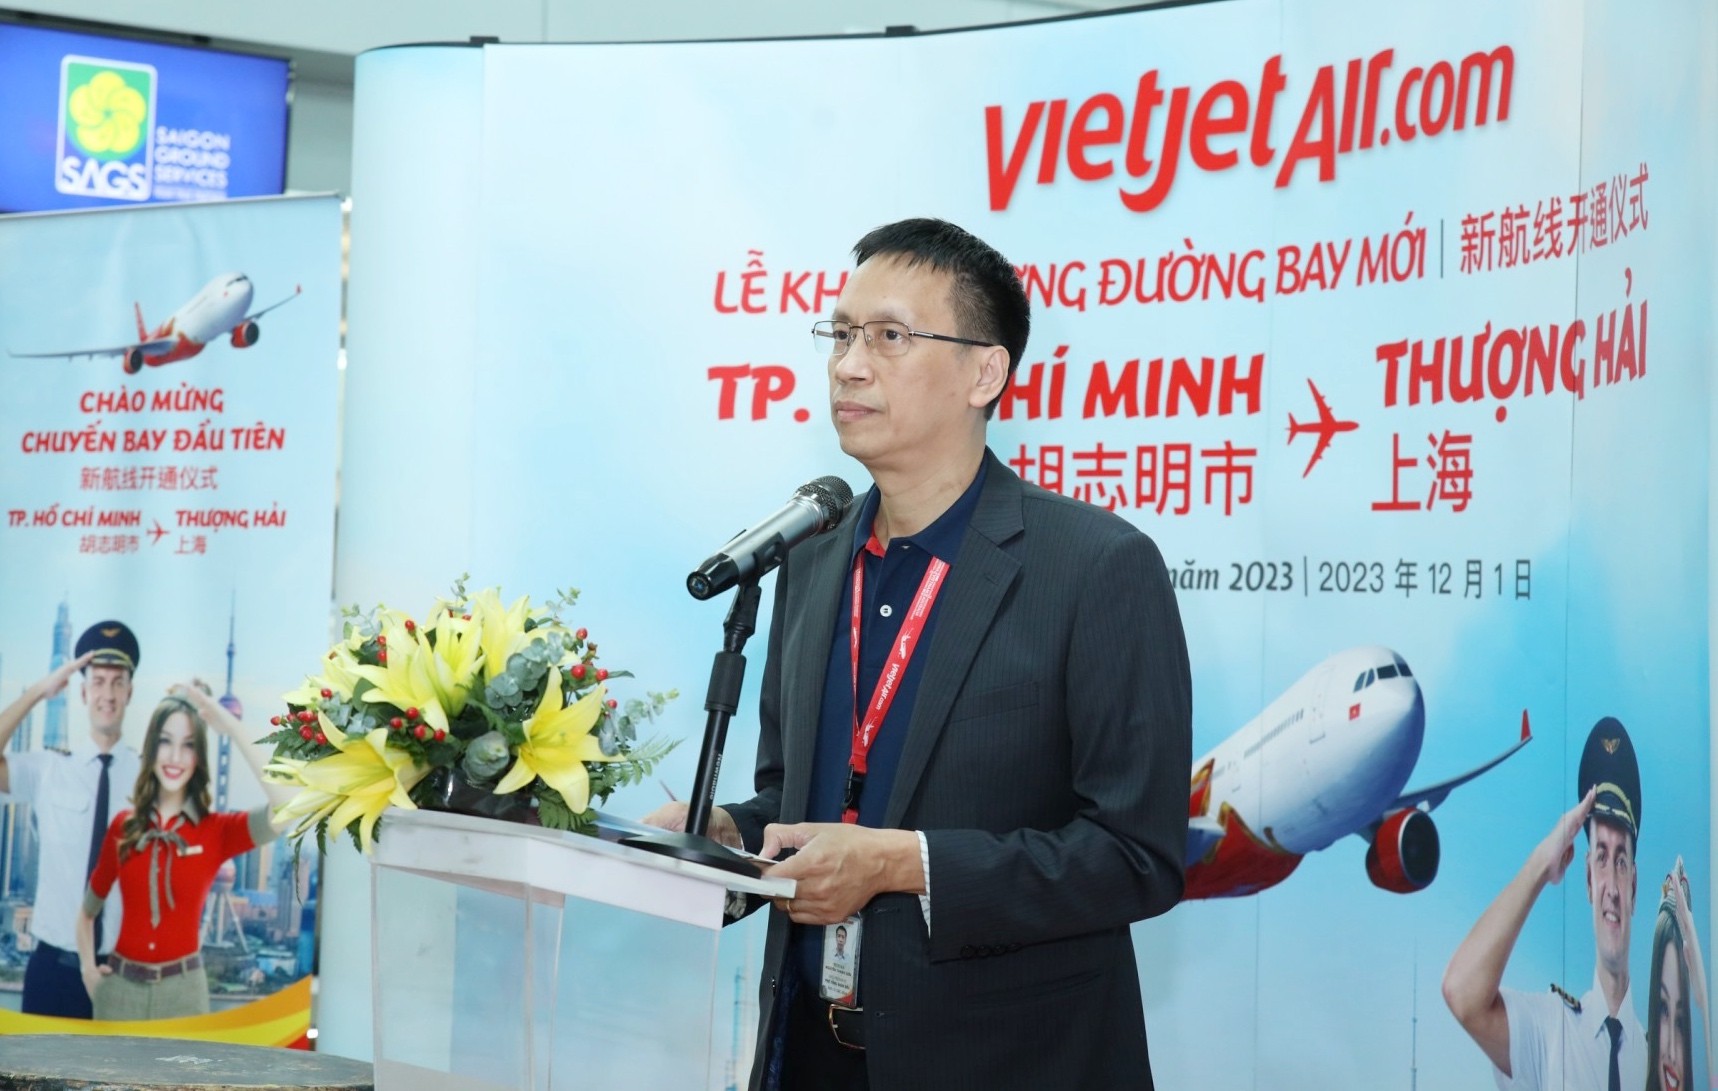 Tin vui: Vietjet vừa khai trương đường bay thẳng giữa Thượng Hải và TP Hồ Chí Minh - ảnh 1